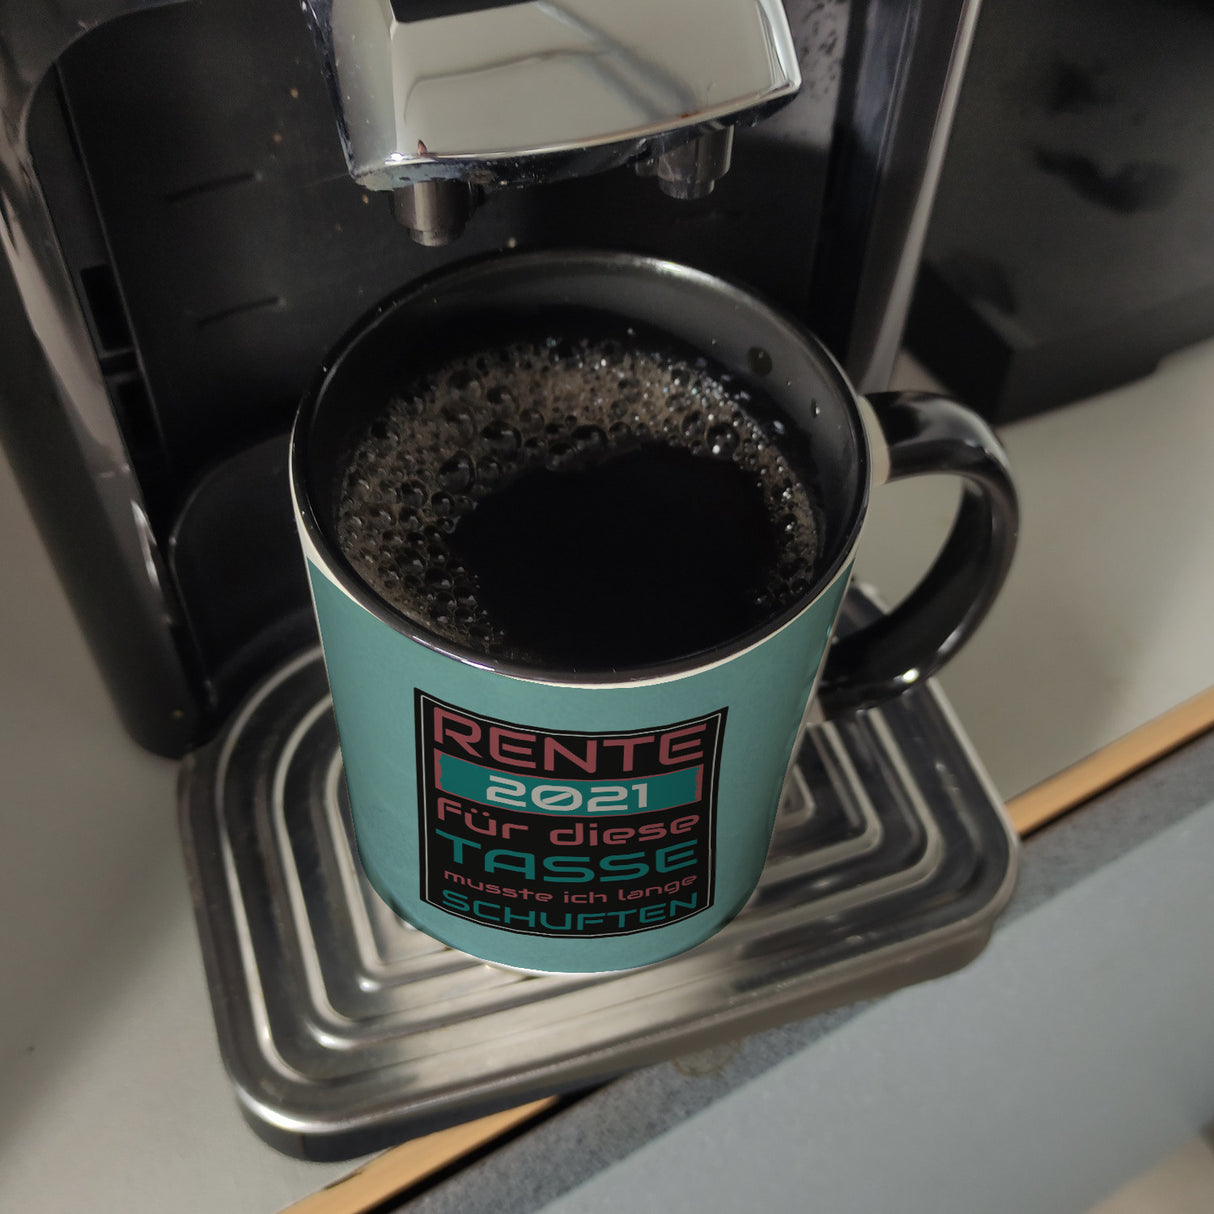 Rente 2021 Kaffeebecher - dafür musste ich lange arbeiten - Vintage Tasse bedruckt